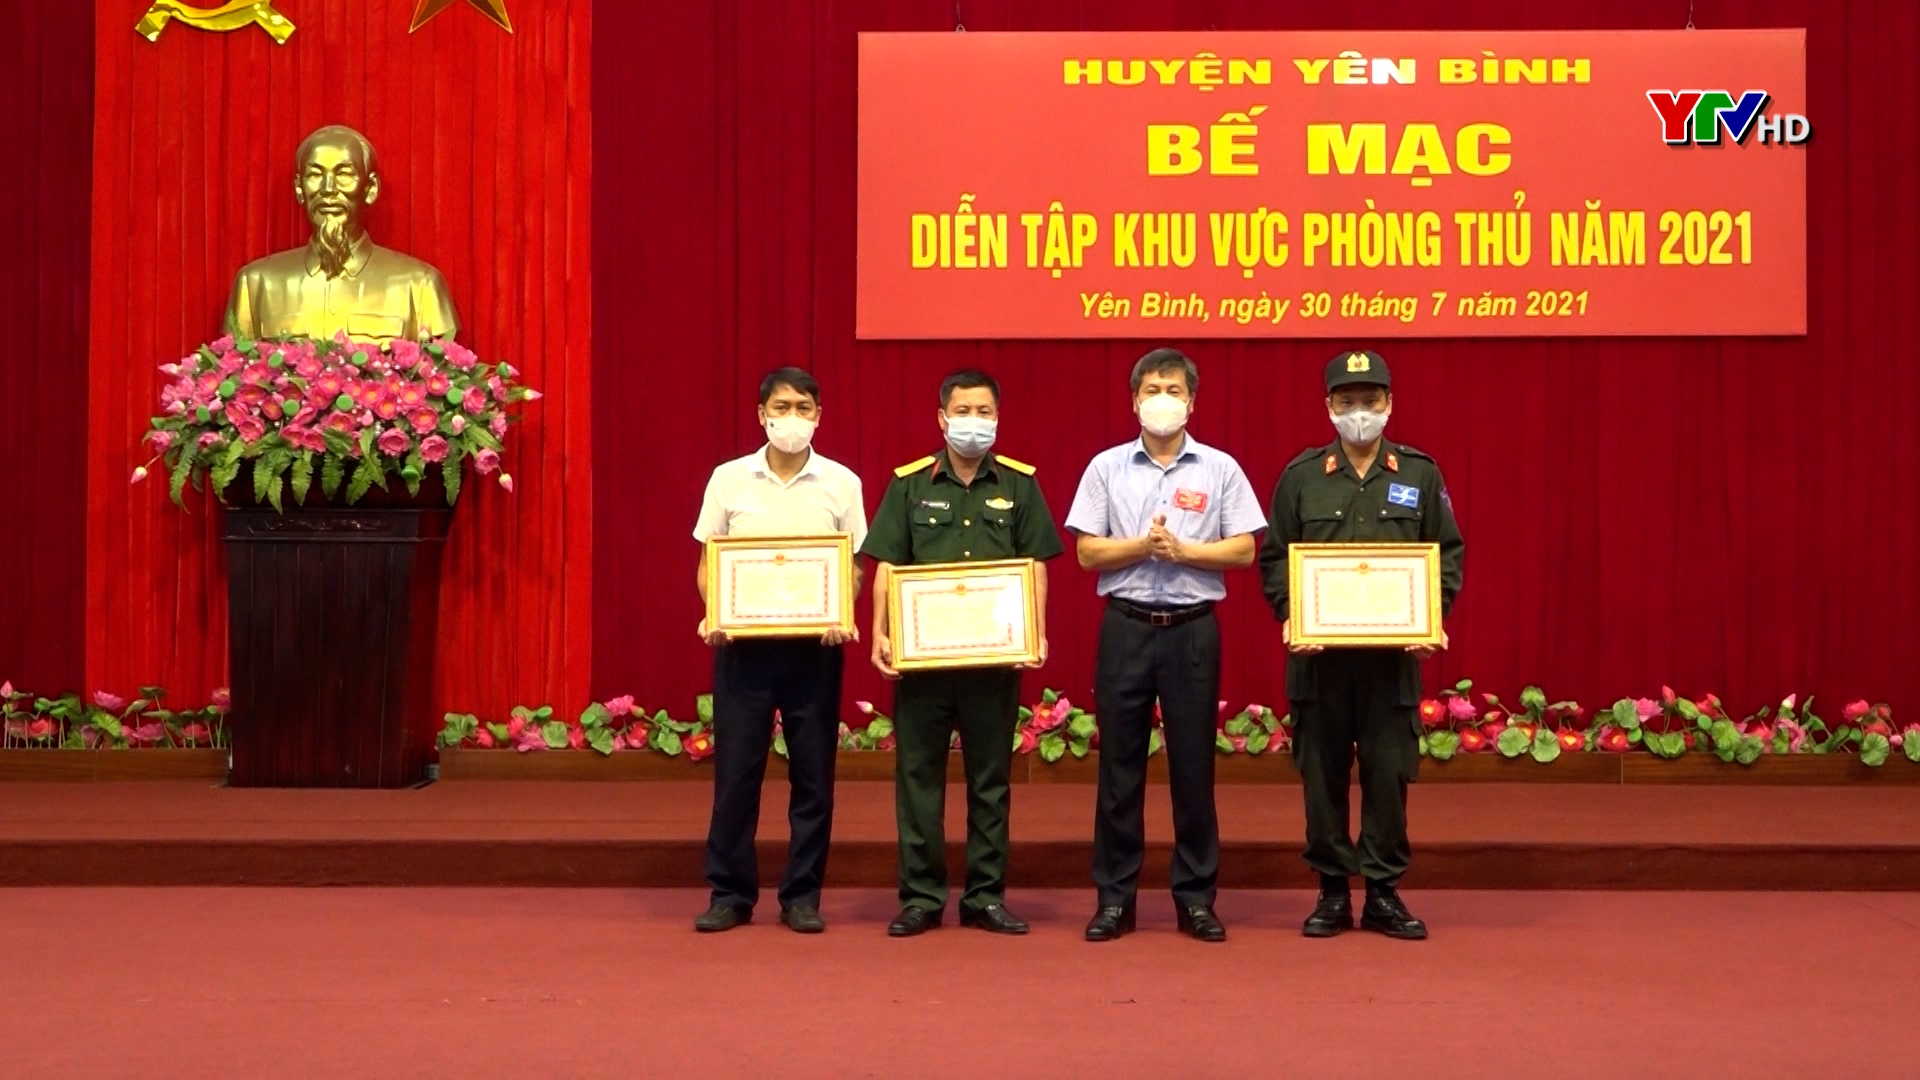 Huyện Yên Bình hoàn thành diễn tập khu vực phòng thủ năm 2021